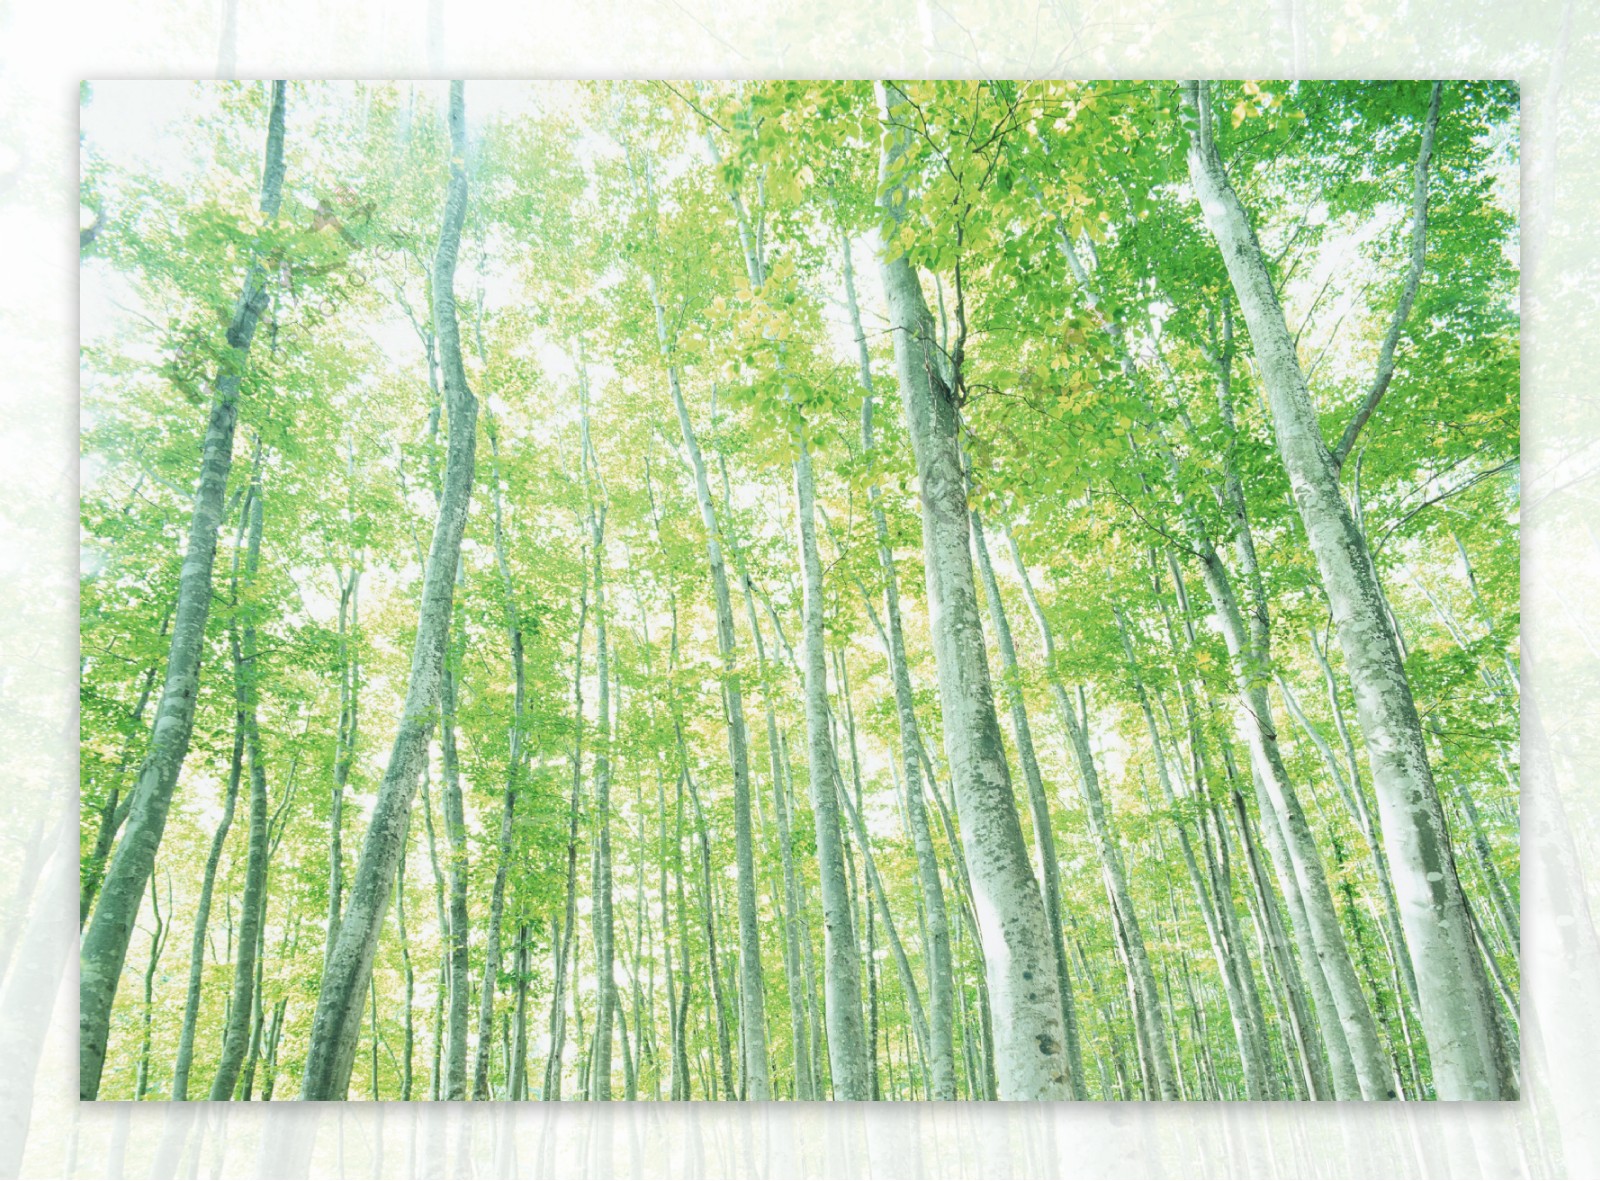 树林图片森林树木图片022